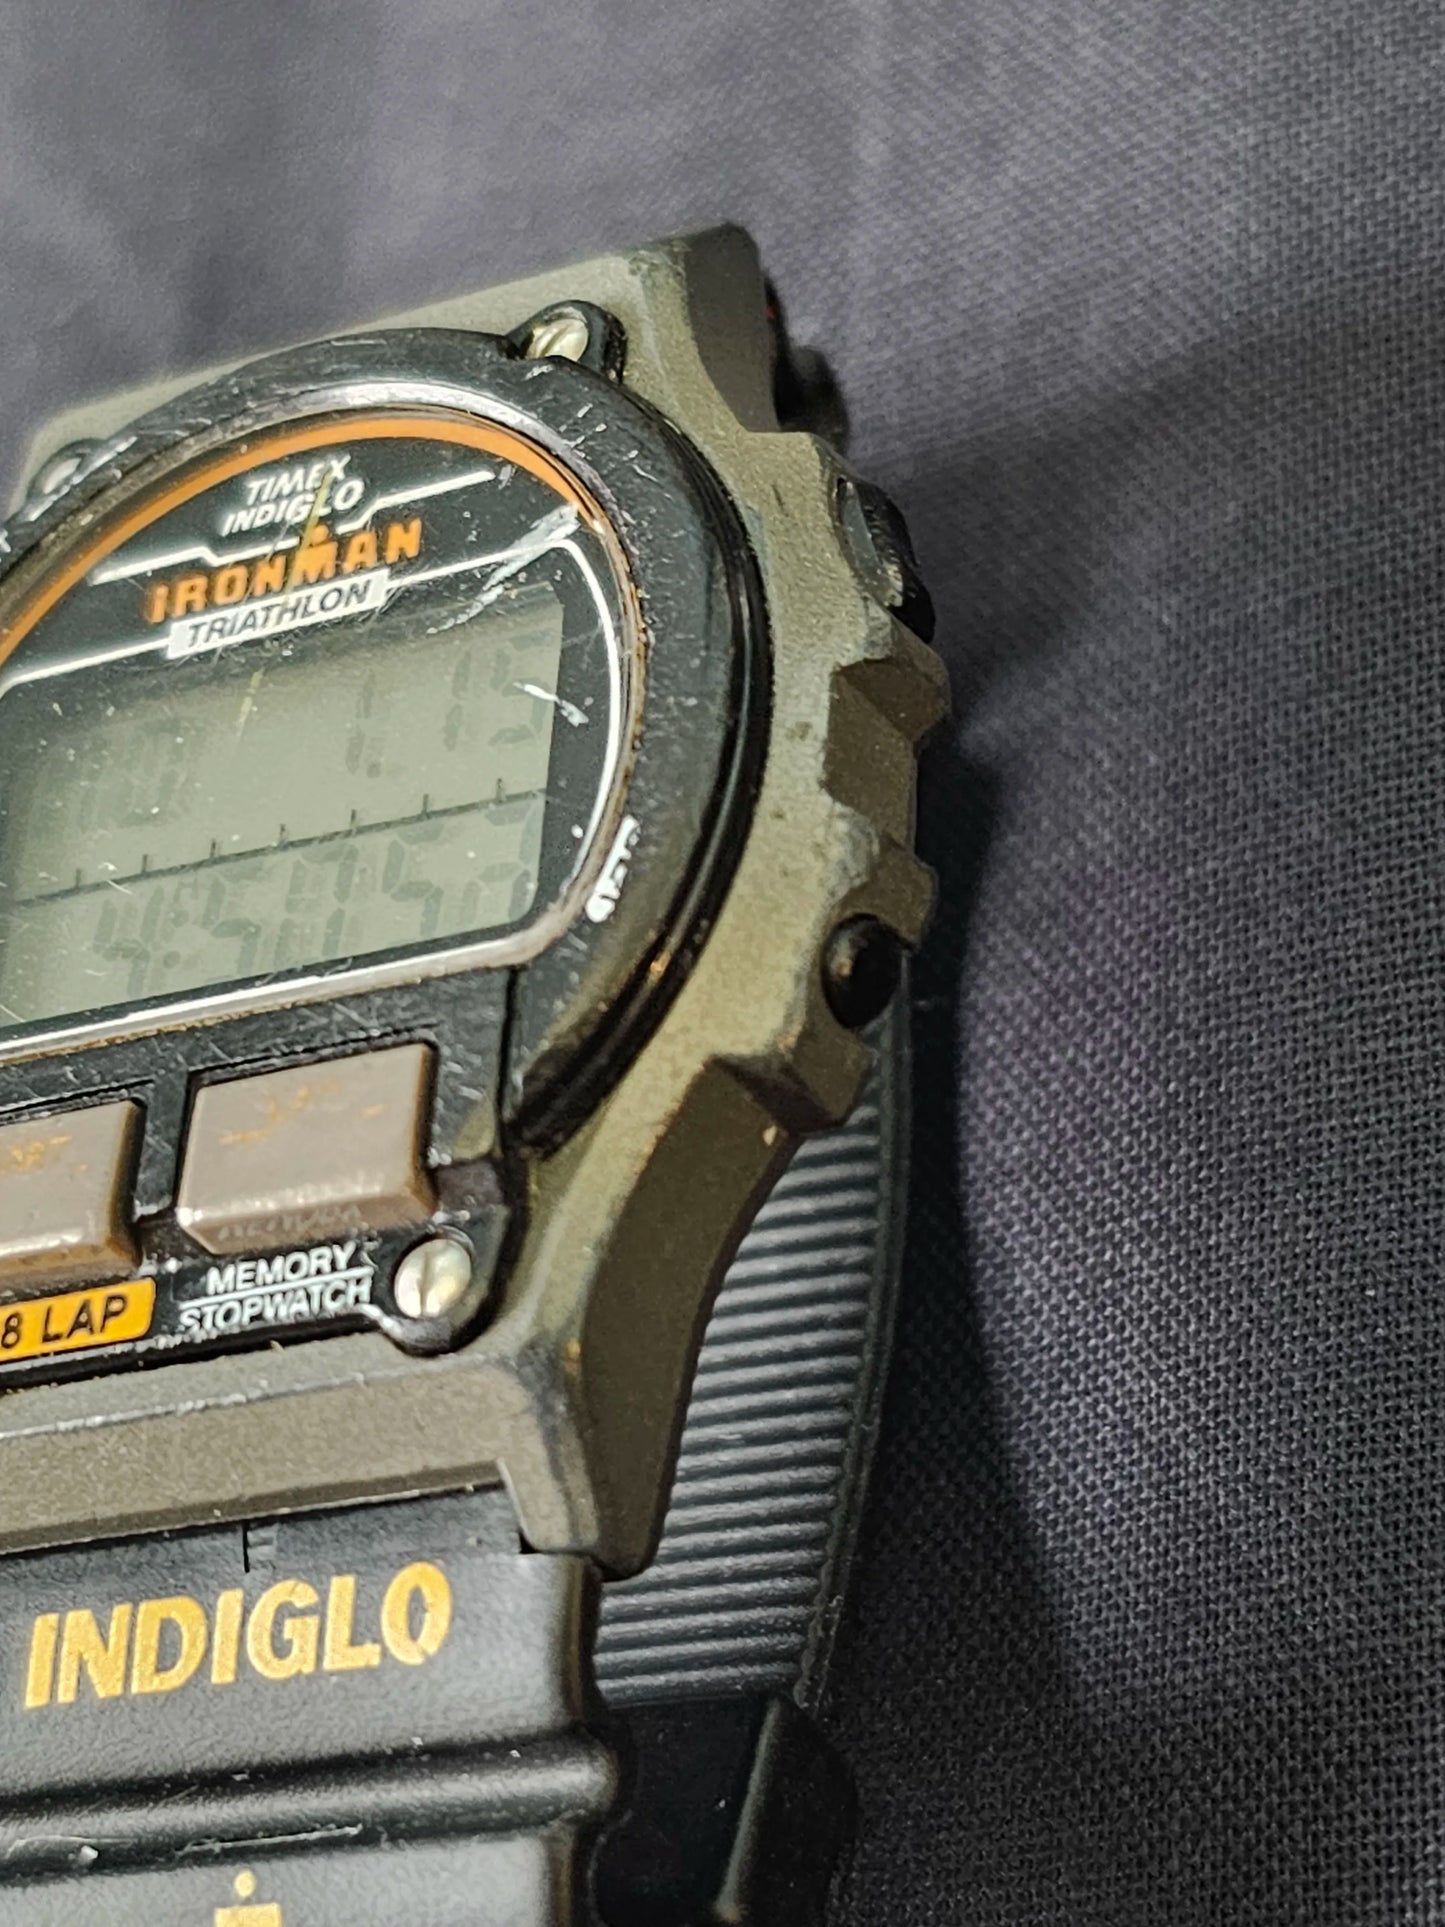 Timex Ironman Triathlon 737-A Watch